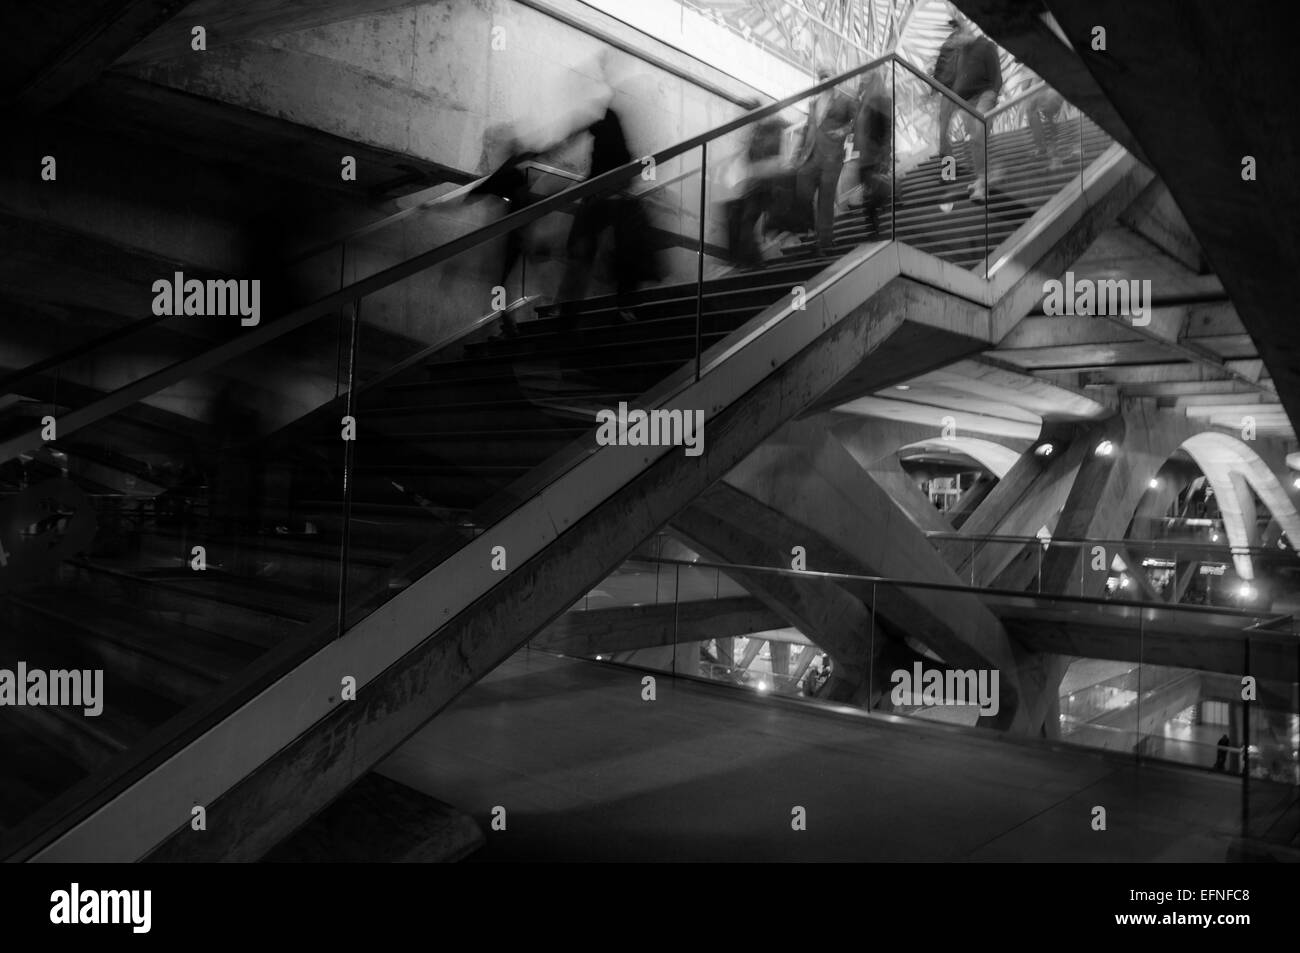 Fotografía en blanco y negro de gente borrosa downing las escaleras de una estación de tren Foto de stock